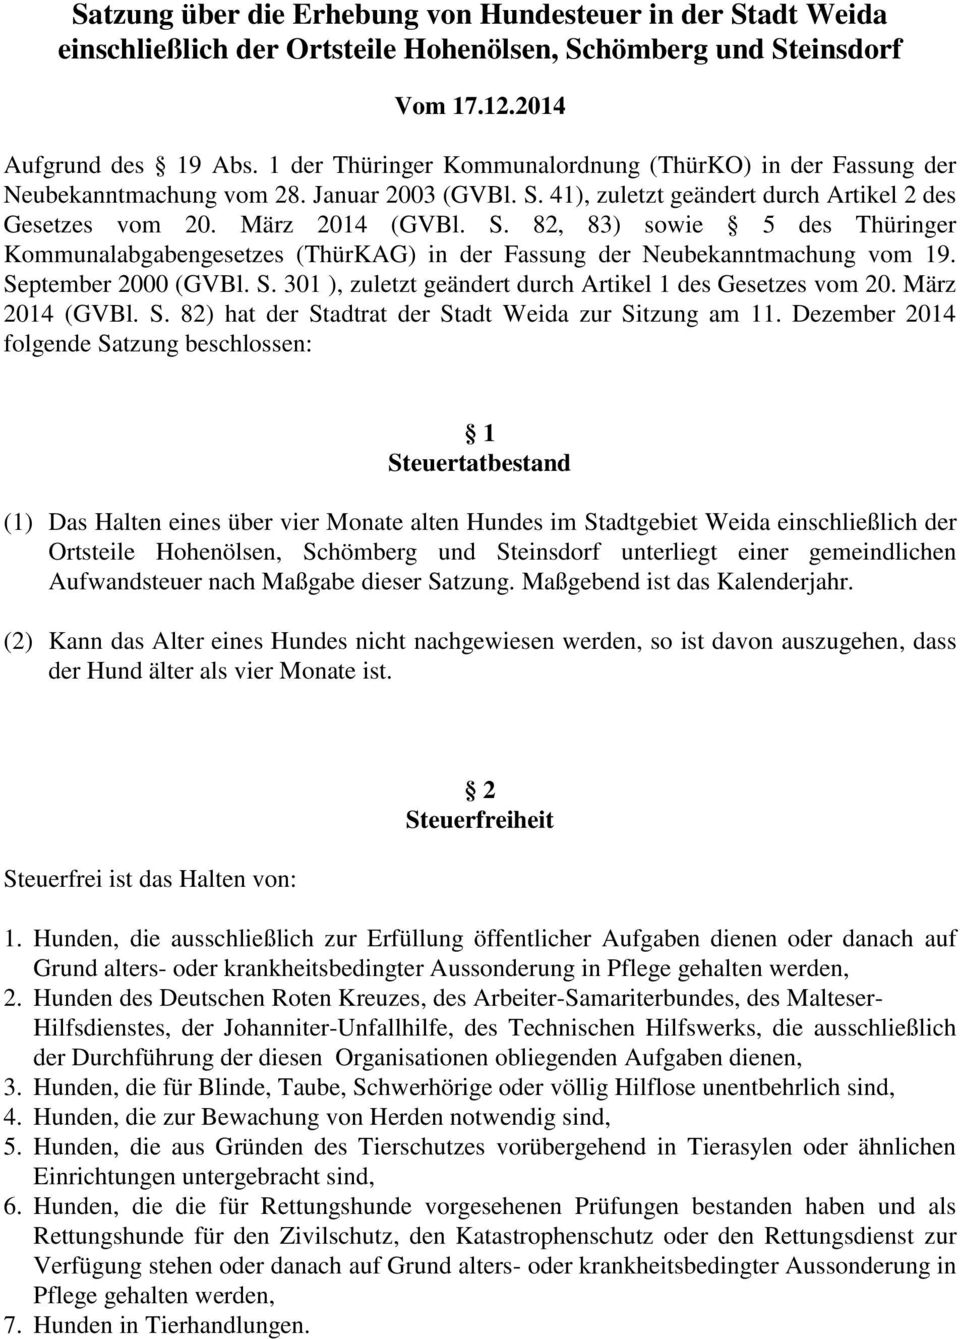 41), zuletzt geändert durch Artikel 2 des Gesetzes vom 20. März 2014 (GVBl. S. 82, 83) sowie 5 des Thüringer Kommunalabgabengesetzes (ThürKAG) in der Fassung der Neubekanntmachung vom 19.